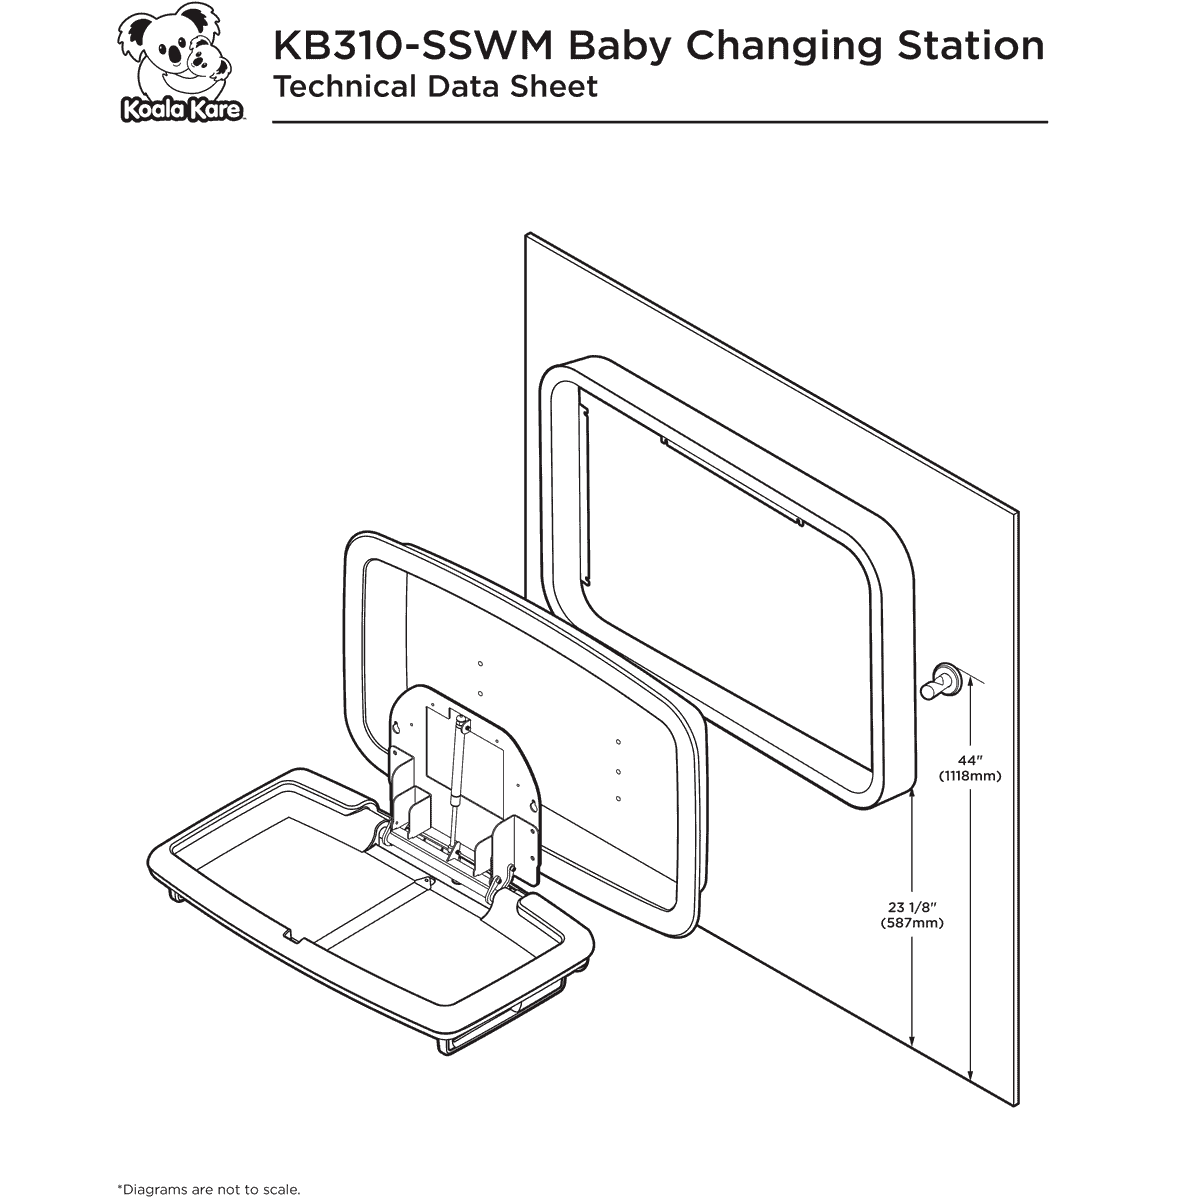 Koala Kare KB310-SSWM Horizontal Stainless Steel Surface-Mounted Baby Changing Station